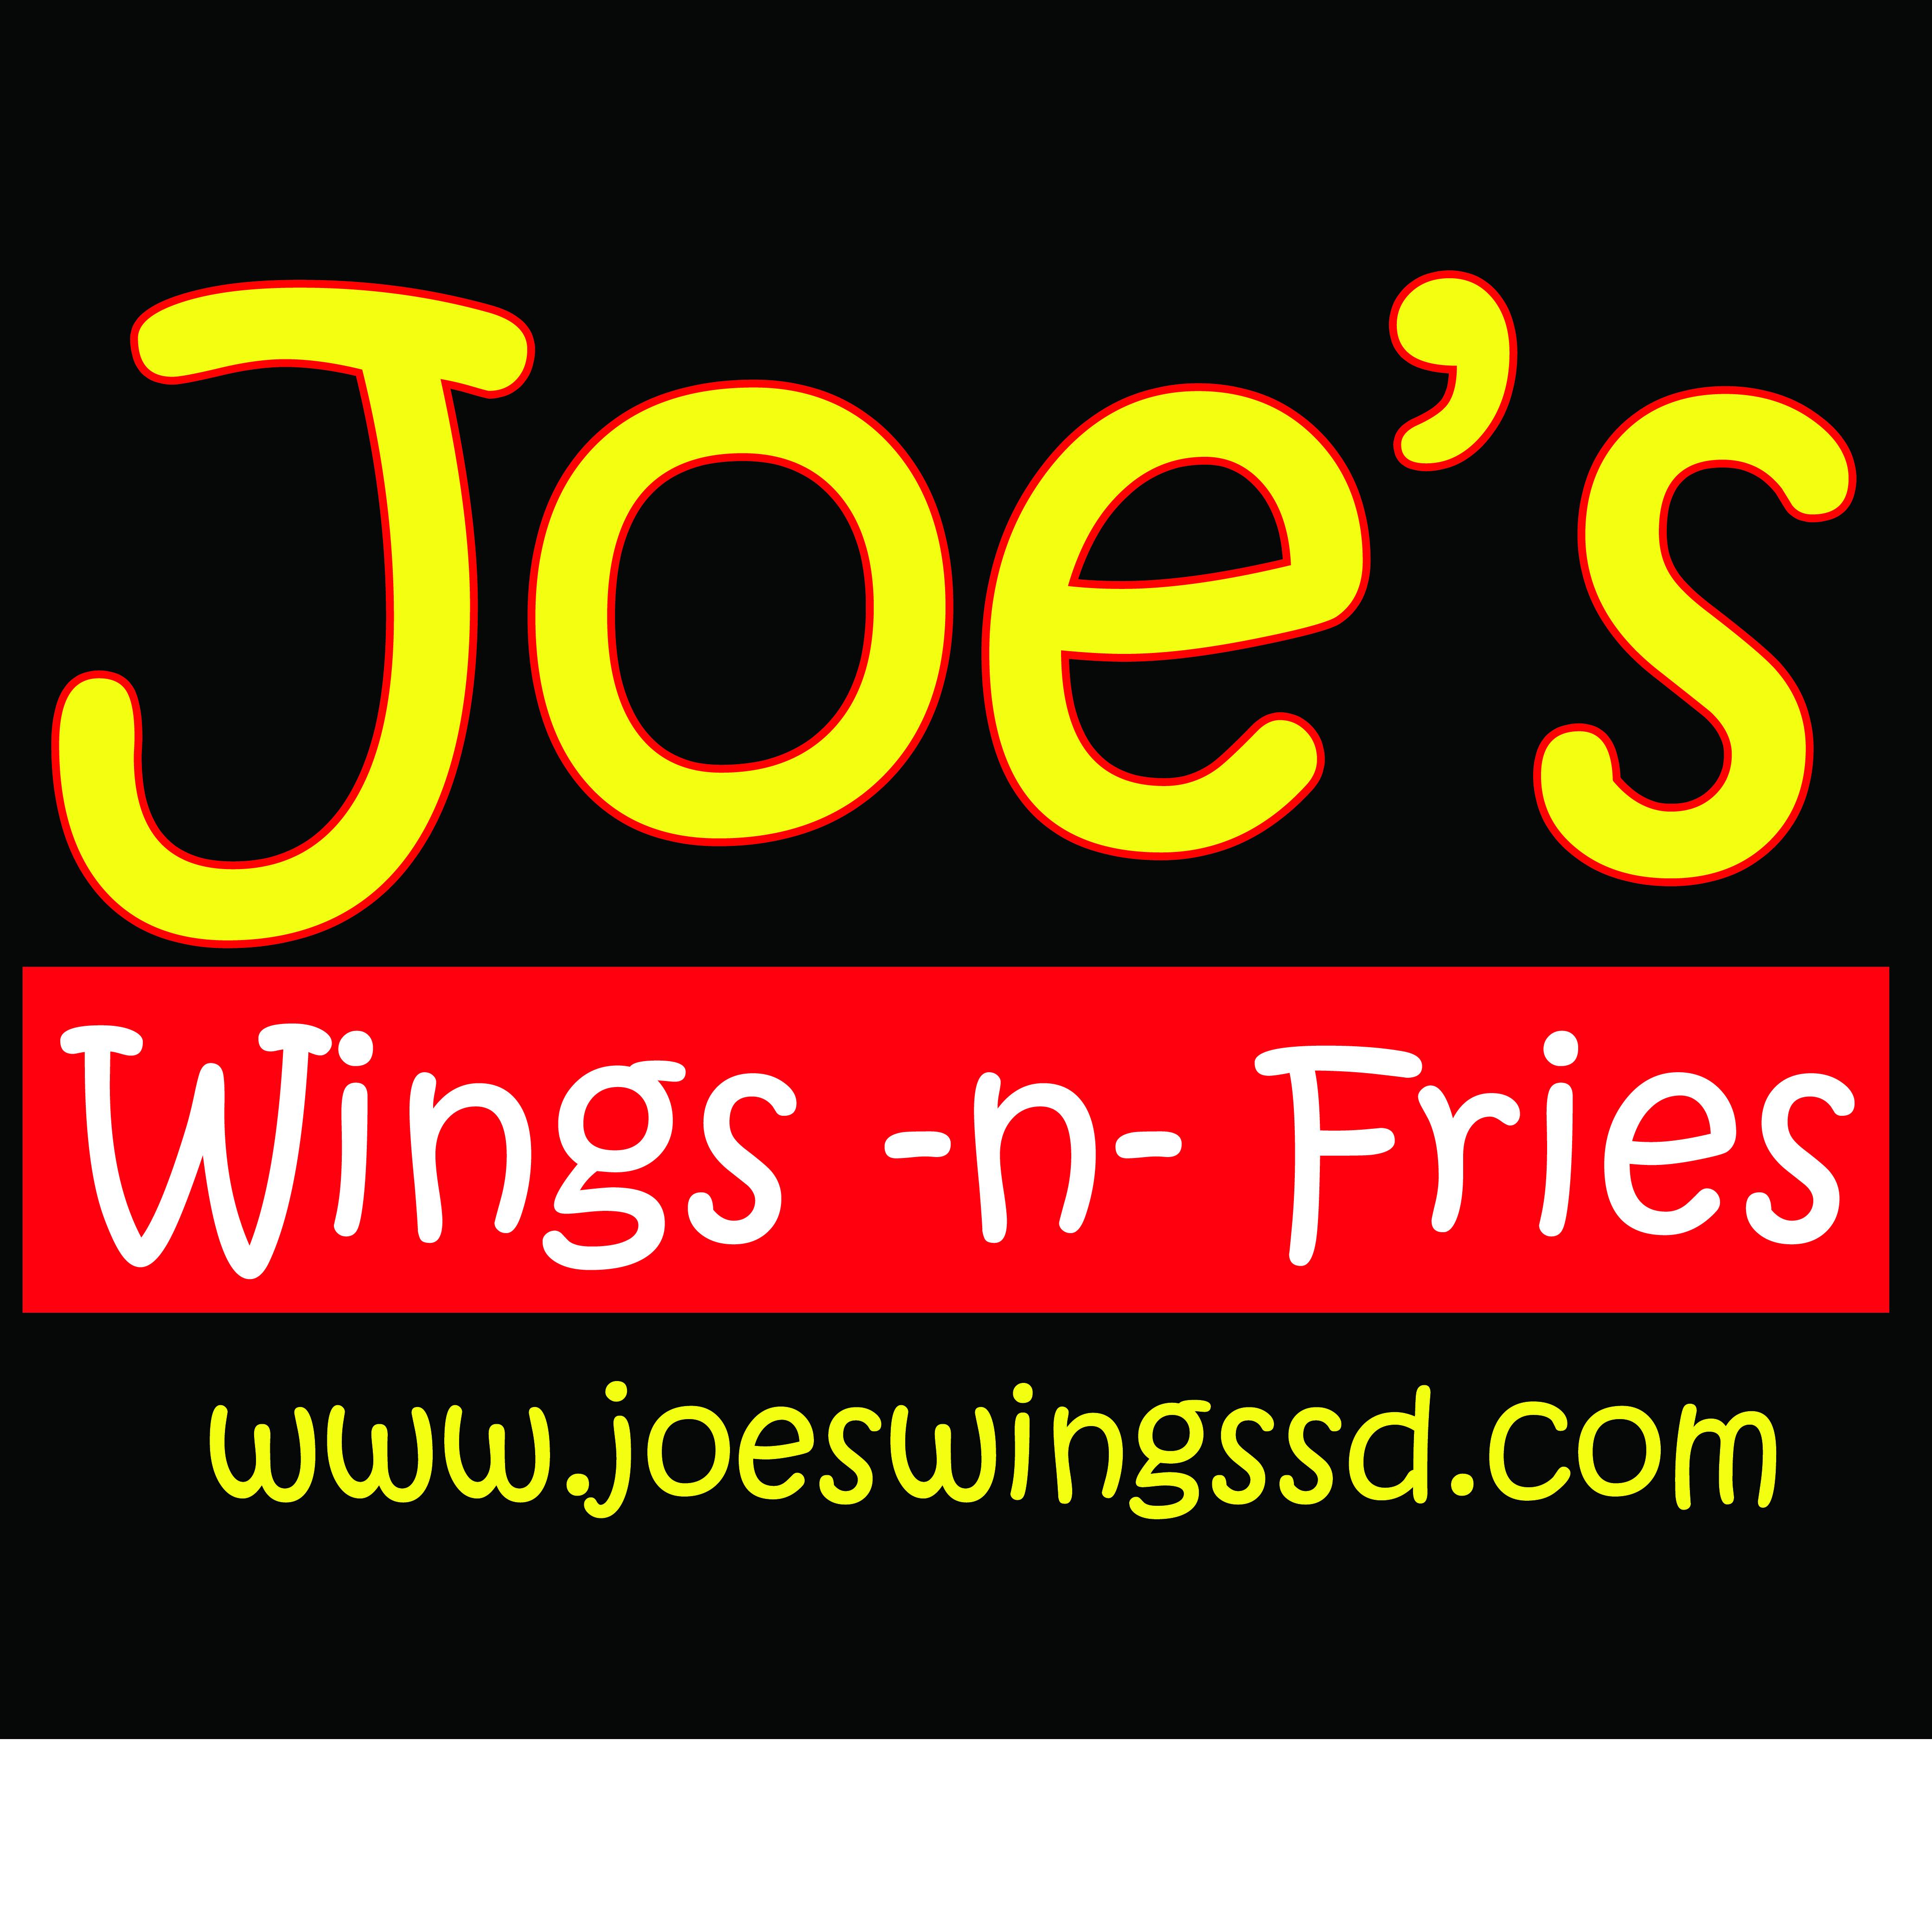 Joe's Wings -n- Fries Photo